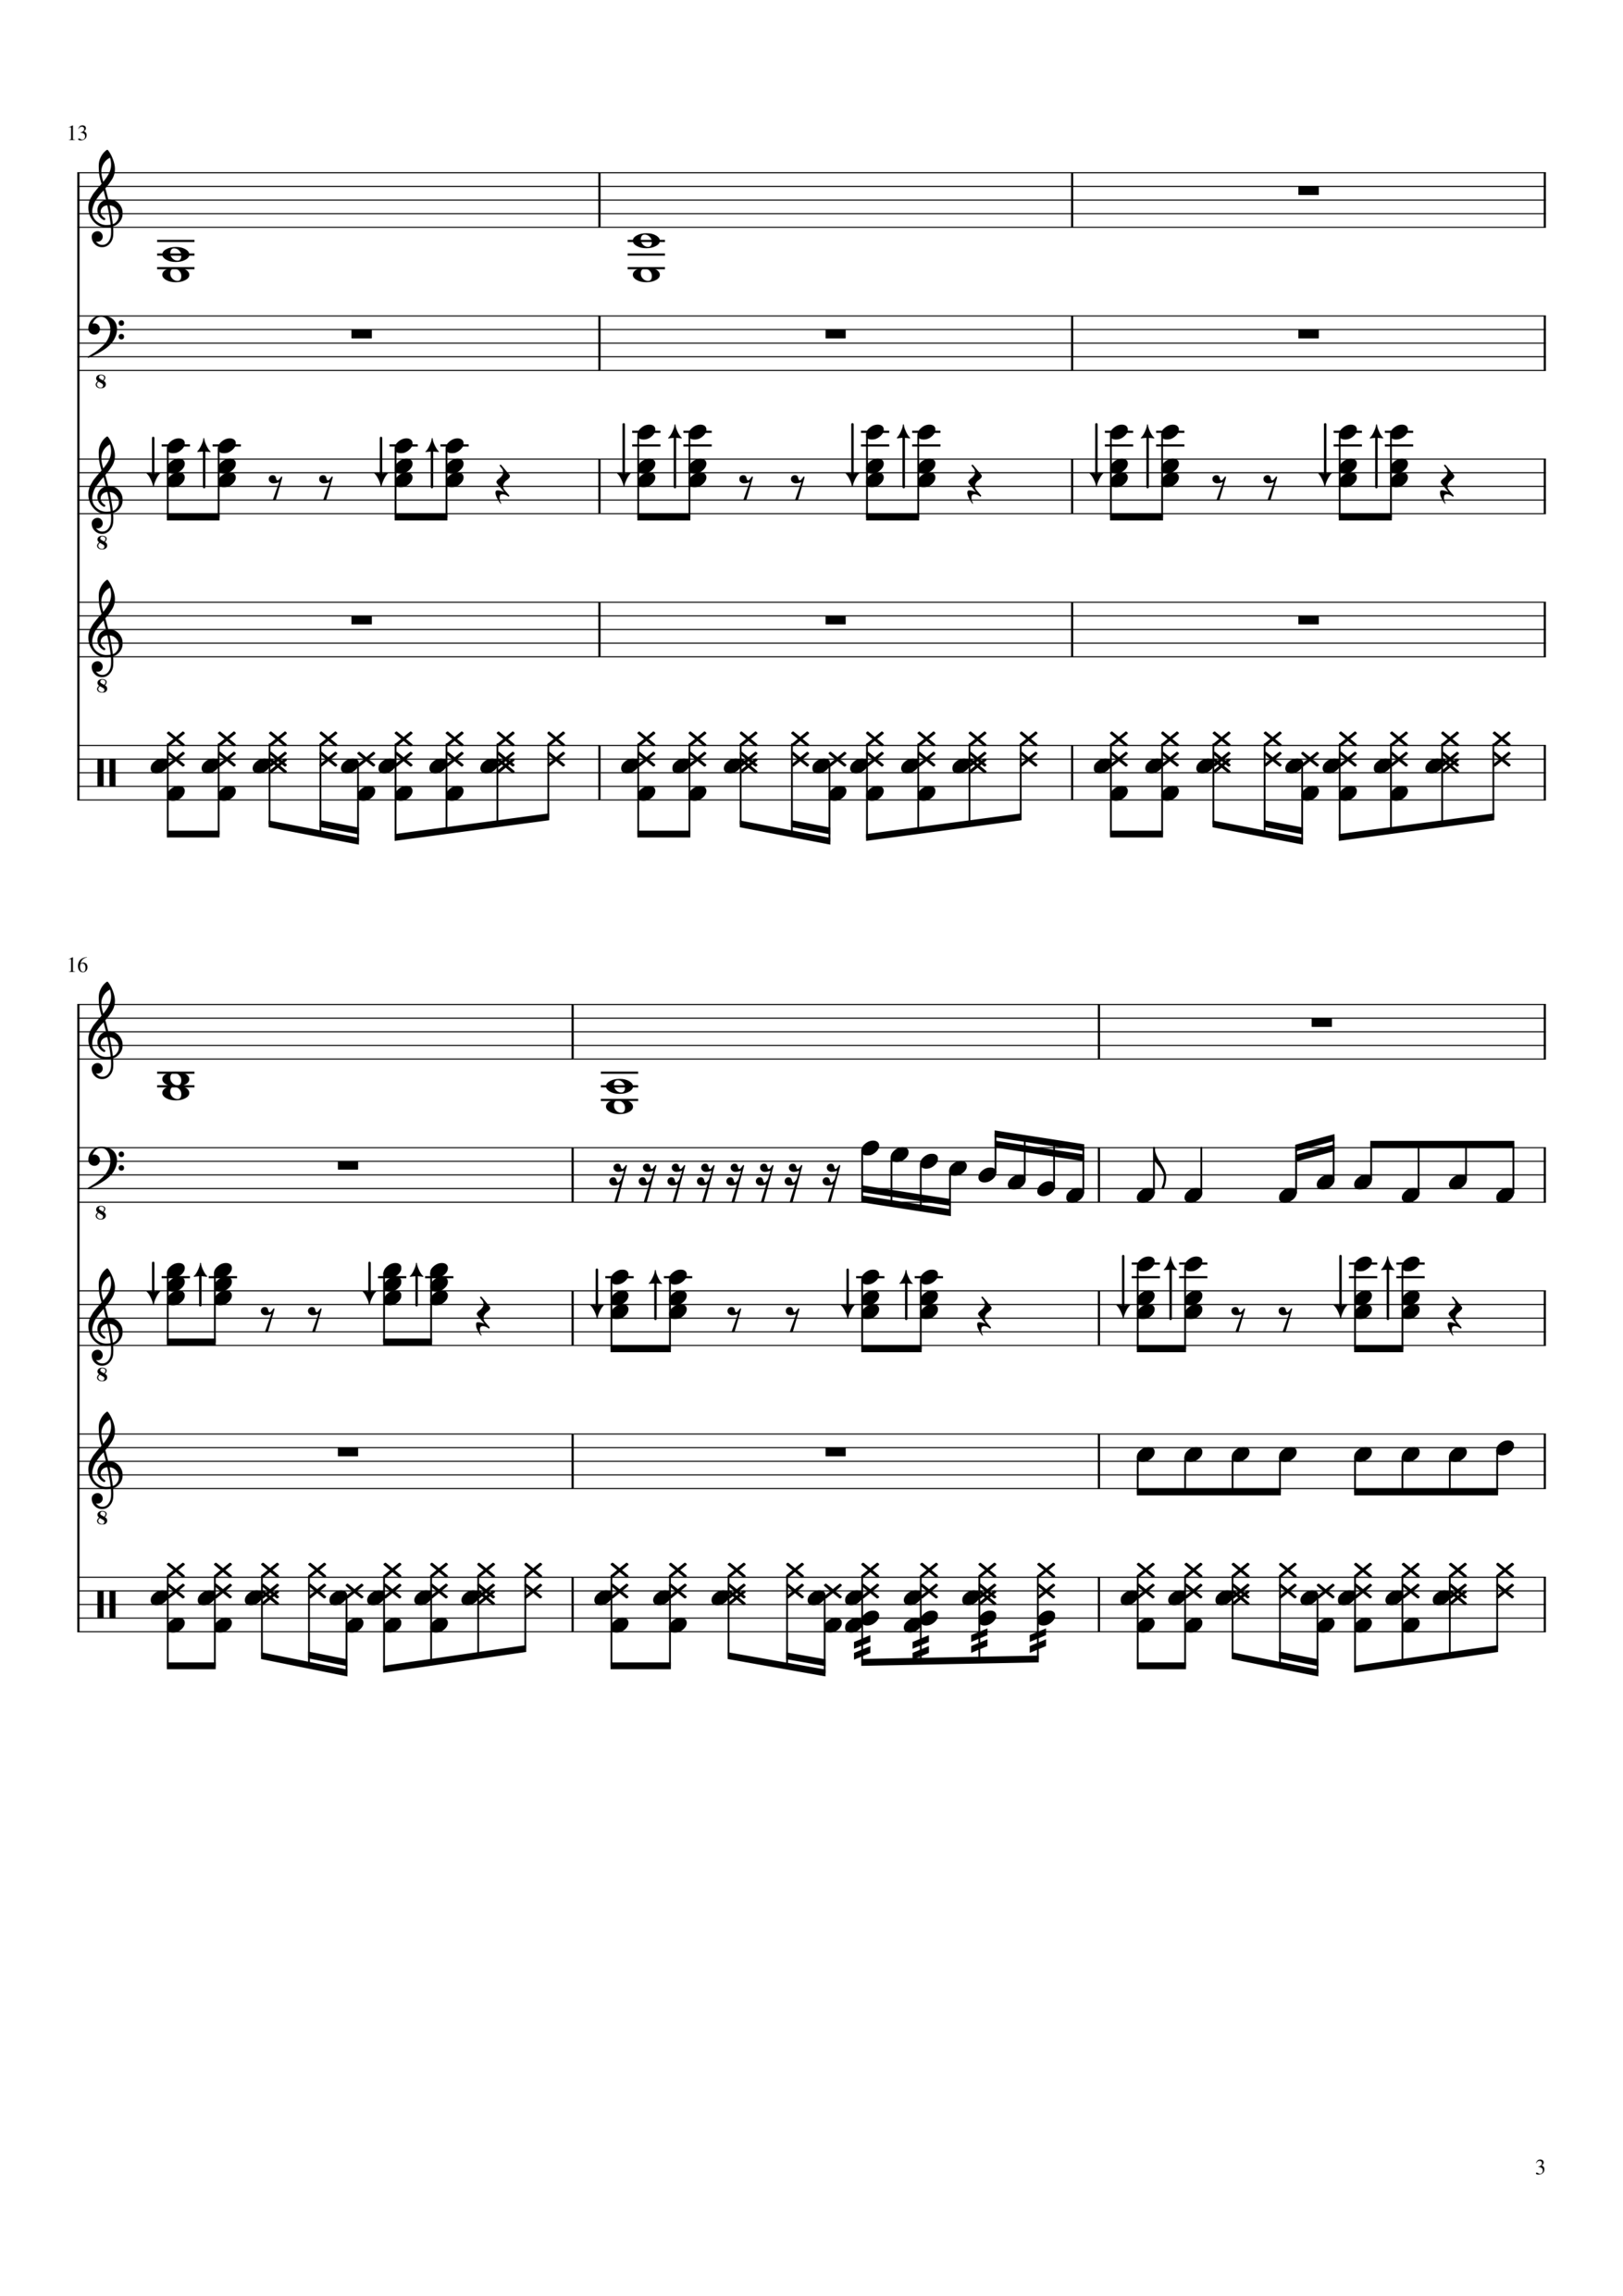 Vechnaya lyubov slide, Image 3